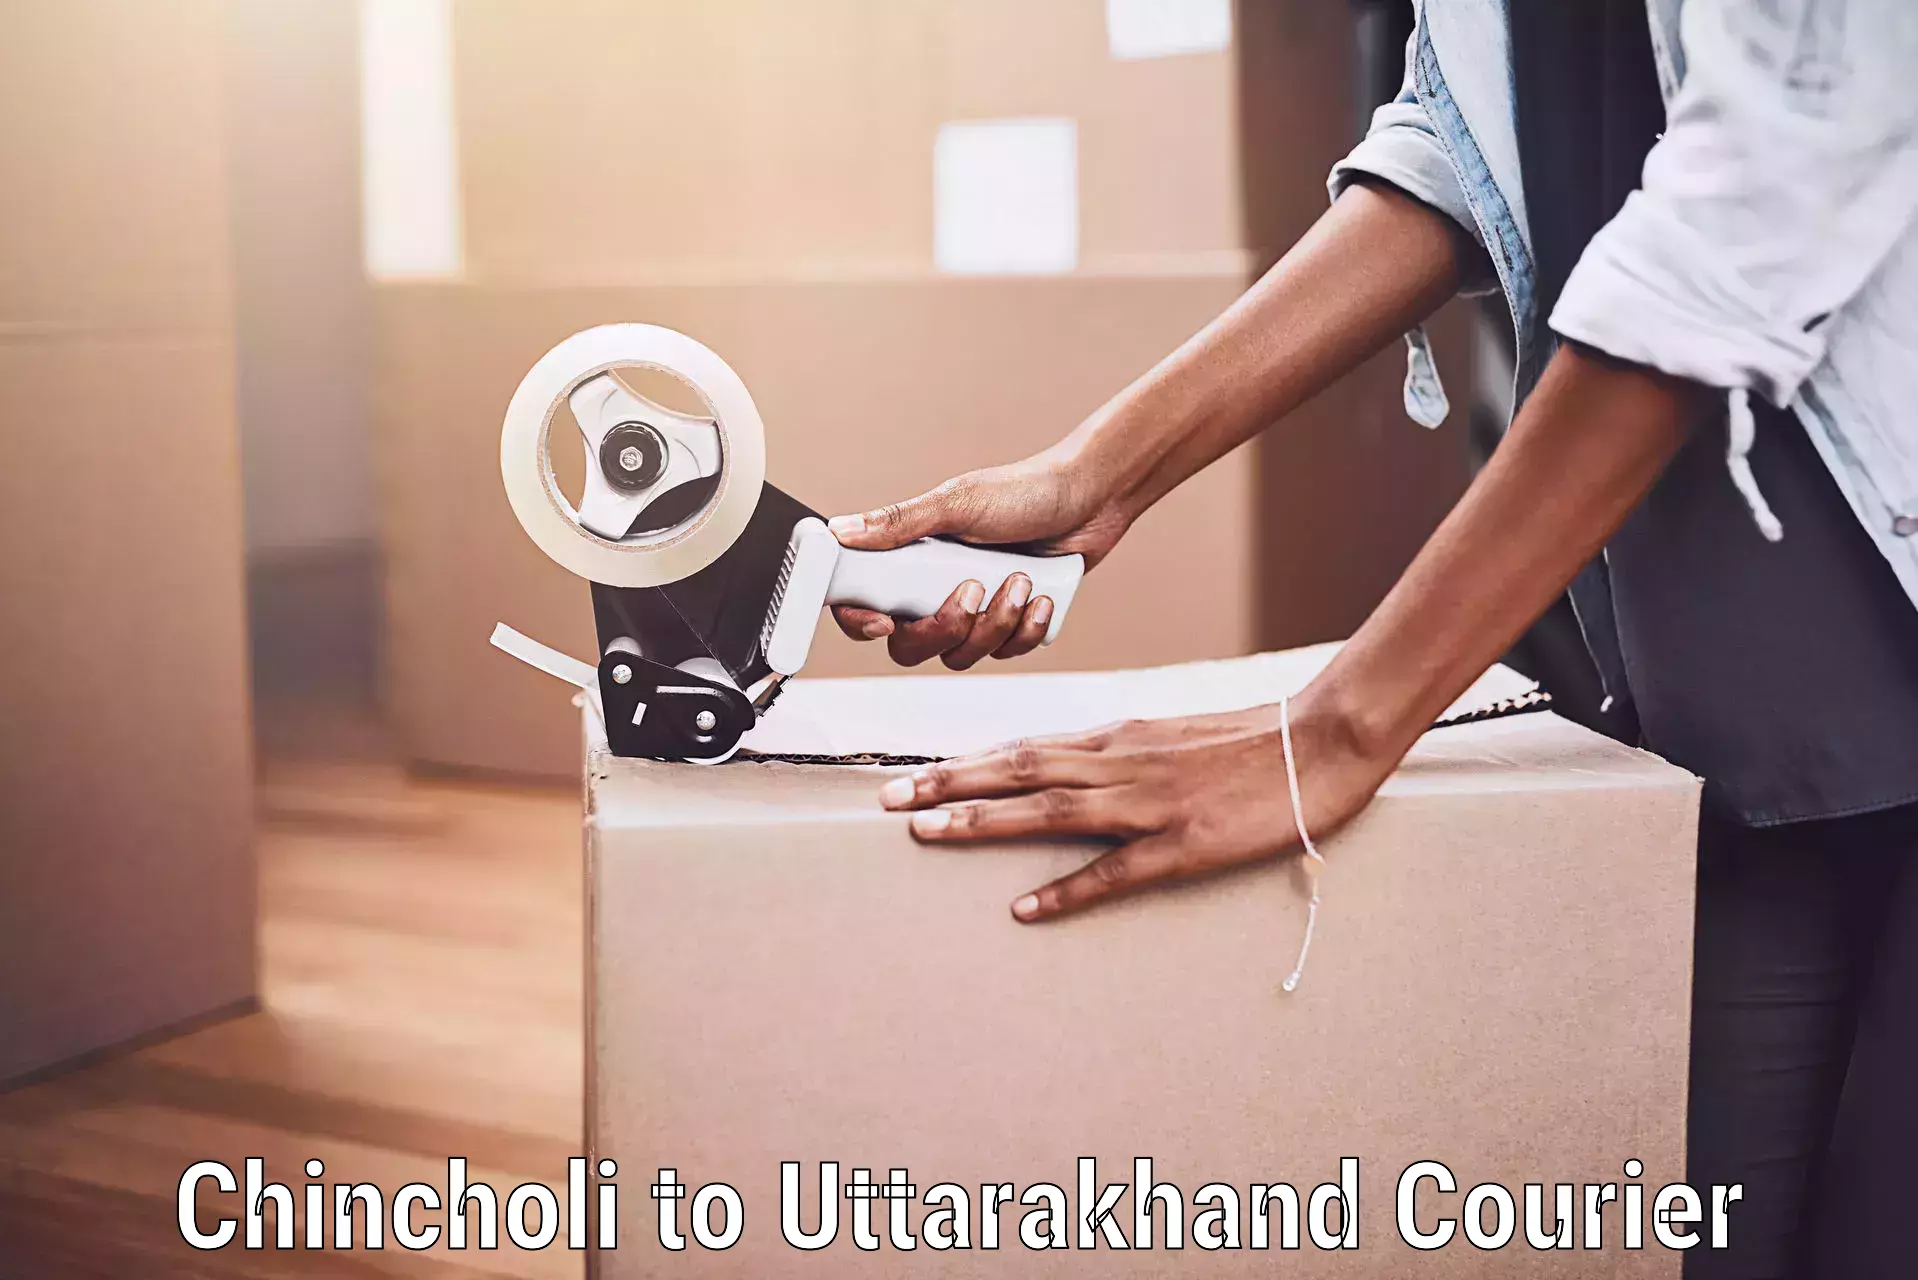 Luggage transfer service Chincholi to Uttarakhand